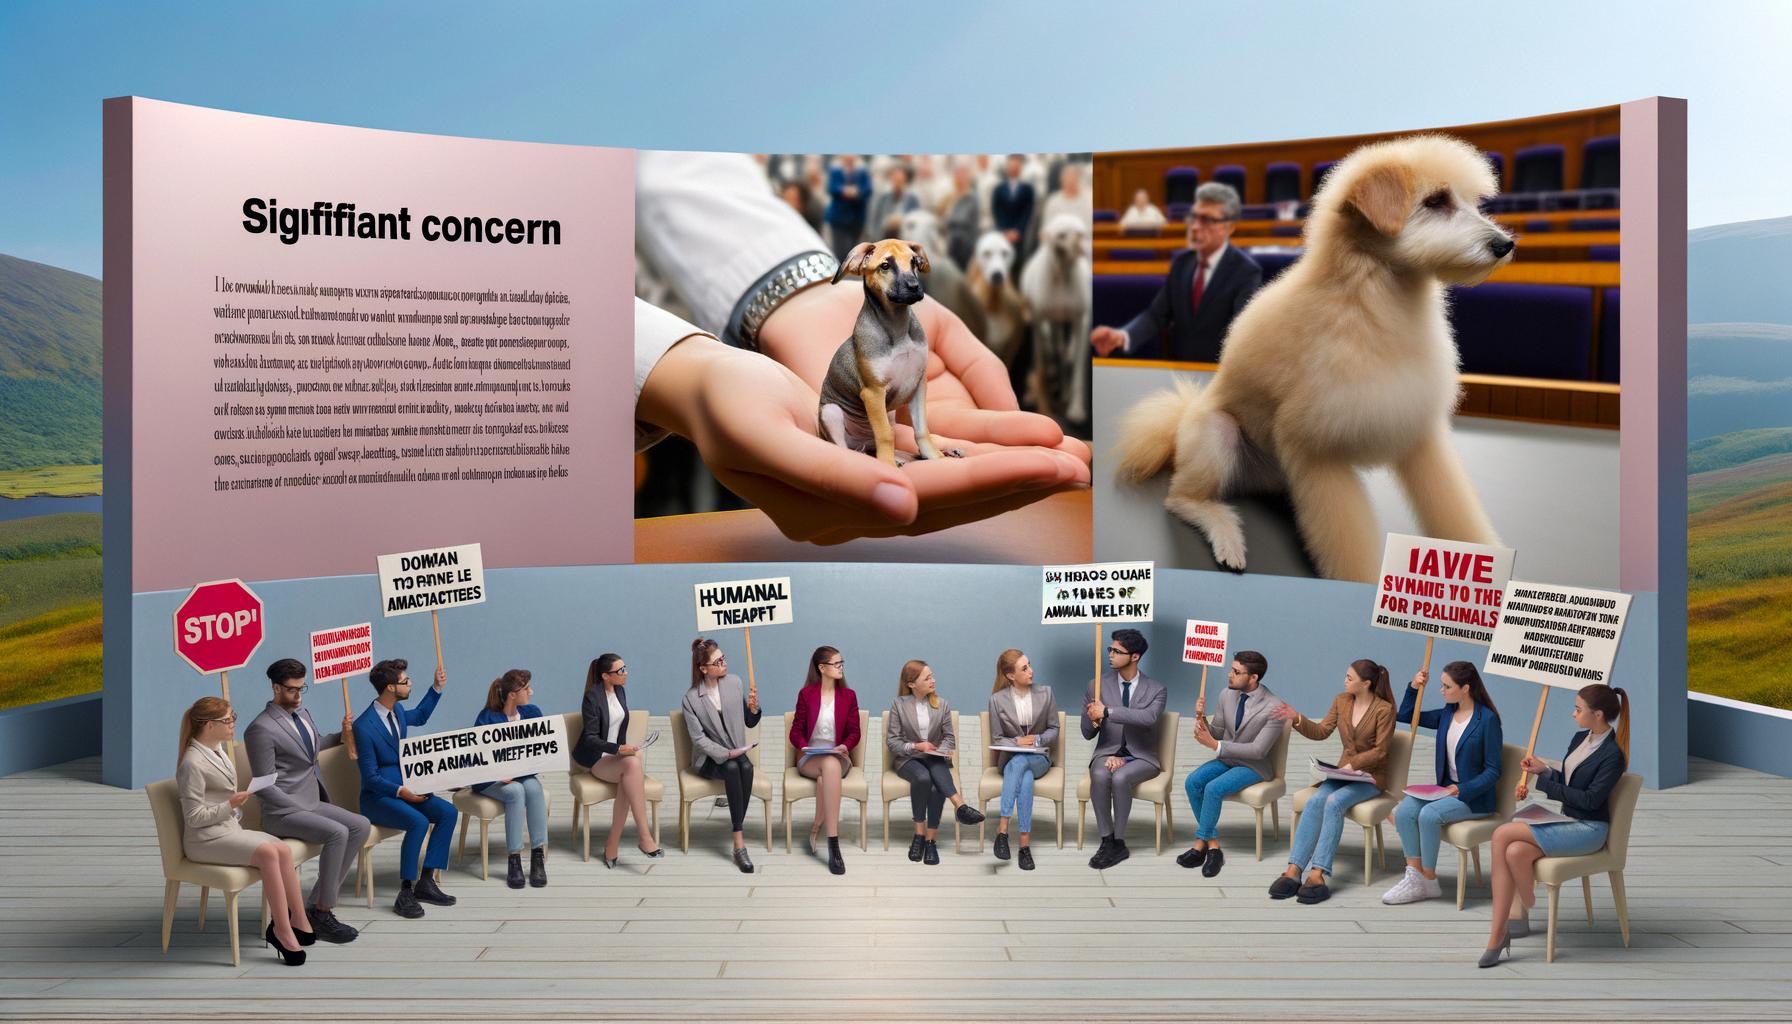 Animal welfare concerns lead to public outcry Balanced News